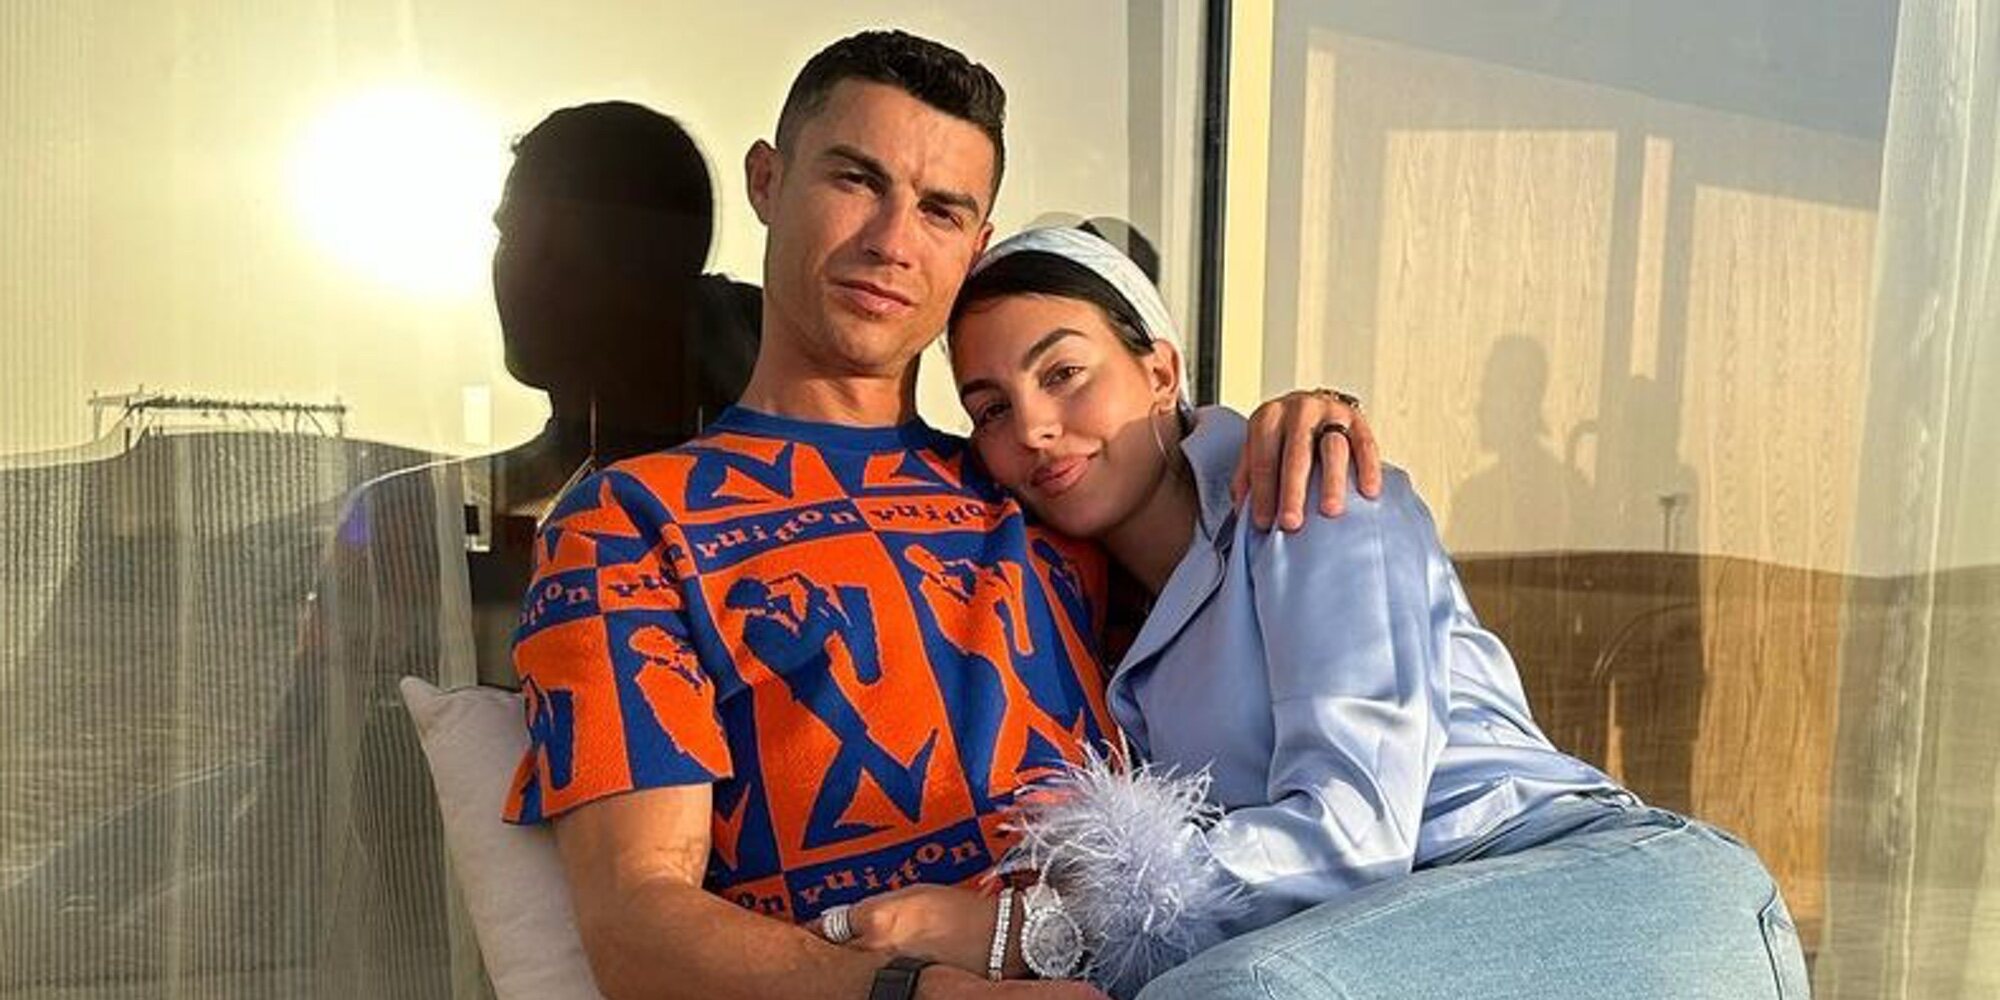 Cristiano Ronaldo celebra su primer cumpleaños en Riad: "Agradecido de estar con mi familia"